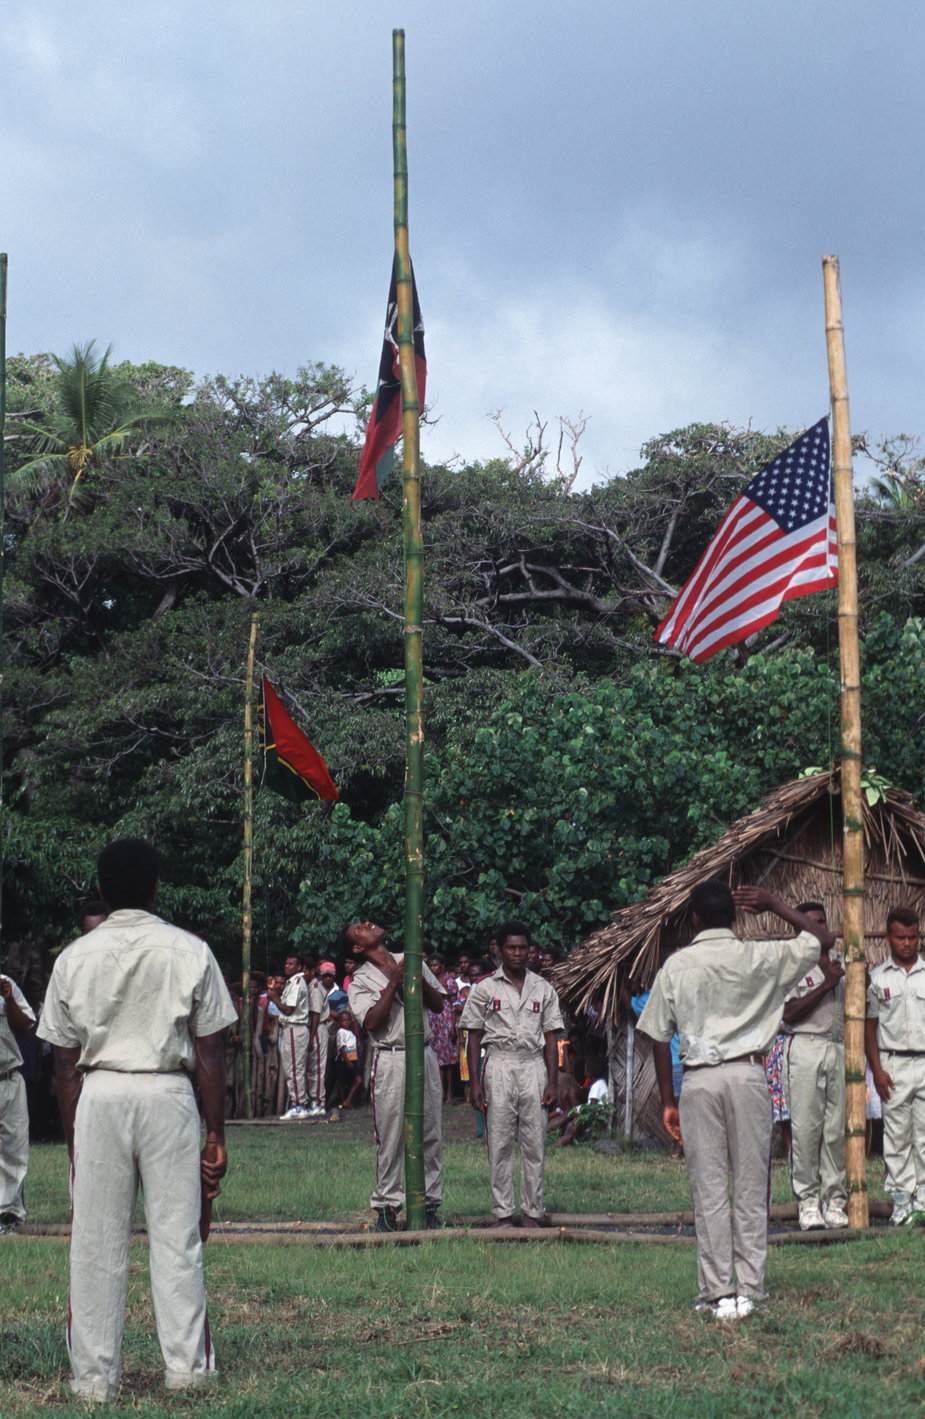 Ceremonia wywieszania flag na maszty (w tym flagi USA) na jednej z wysp Vanuatu